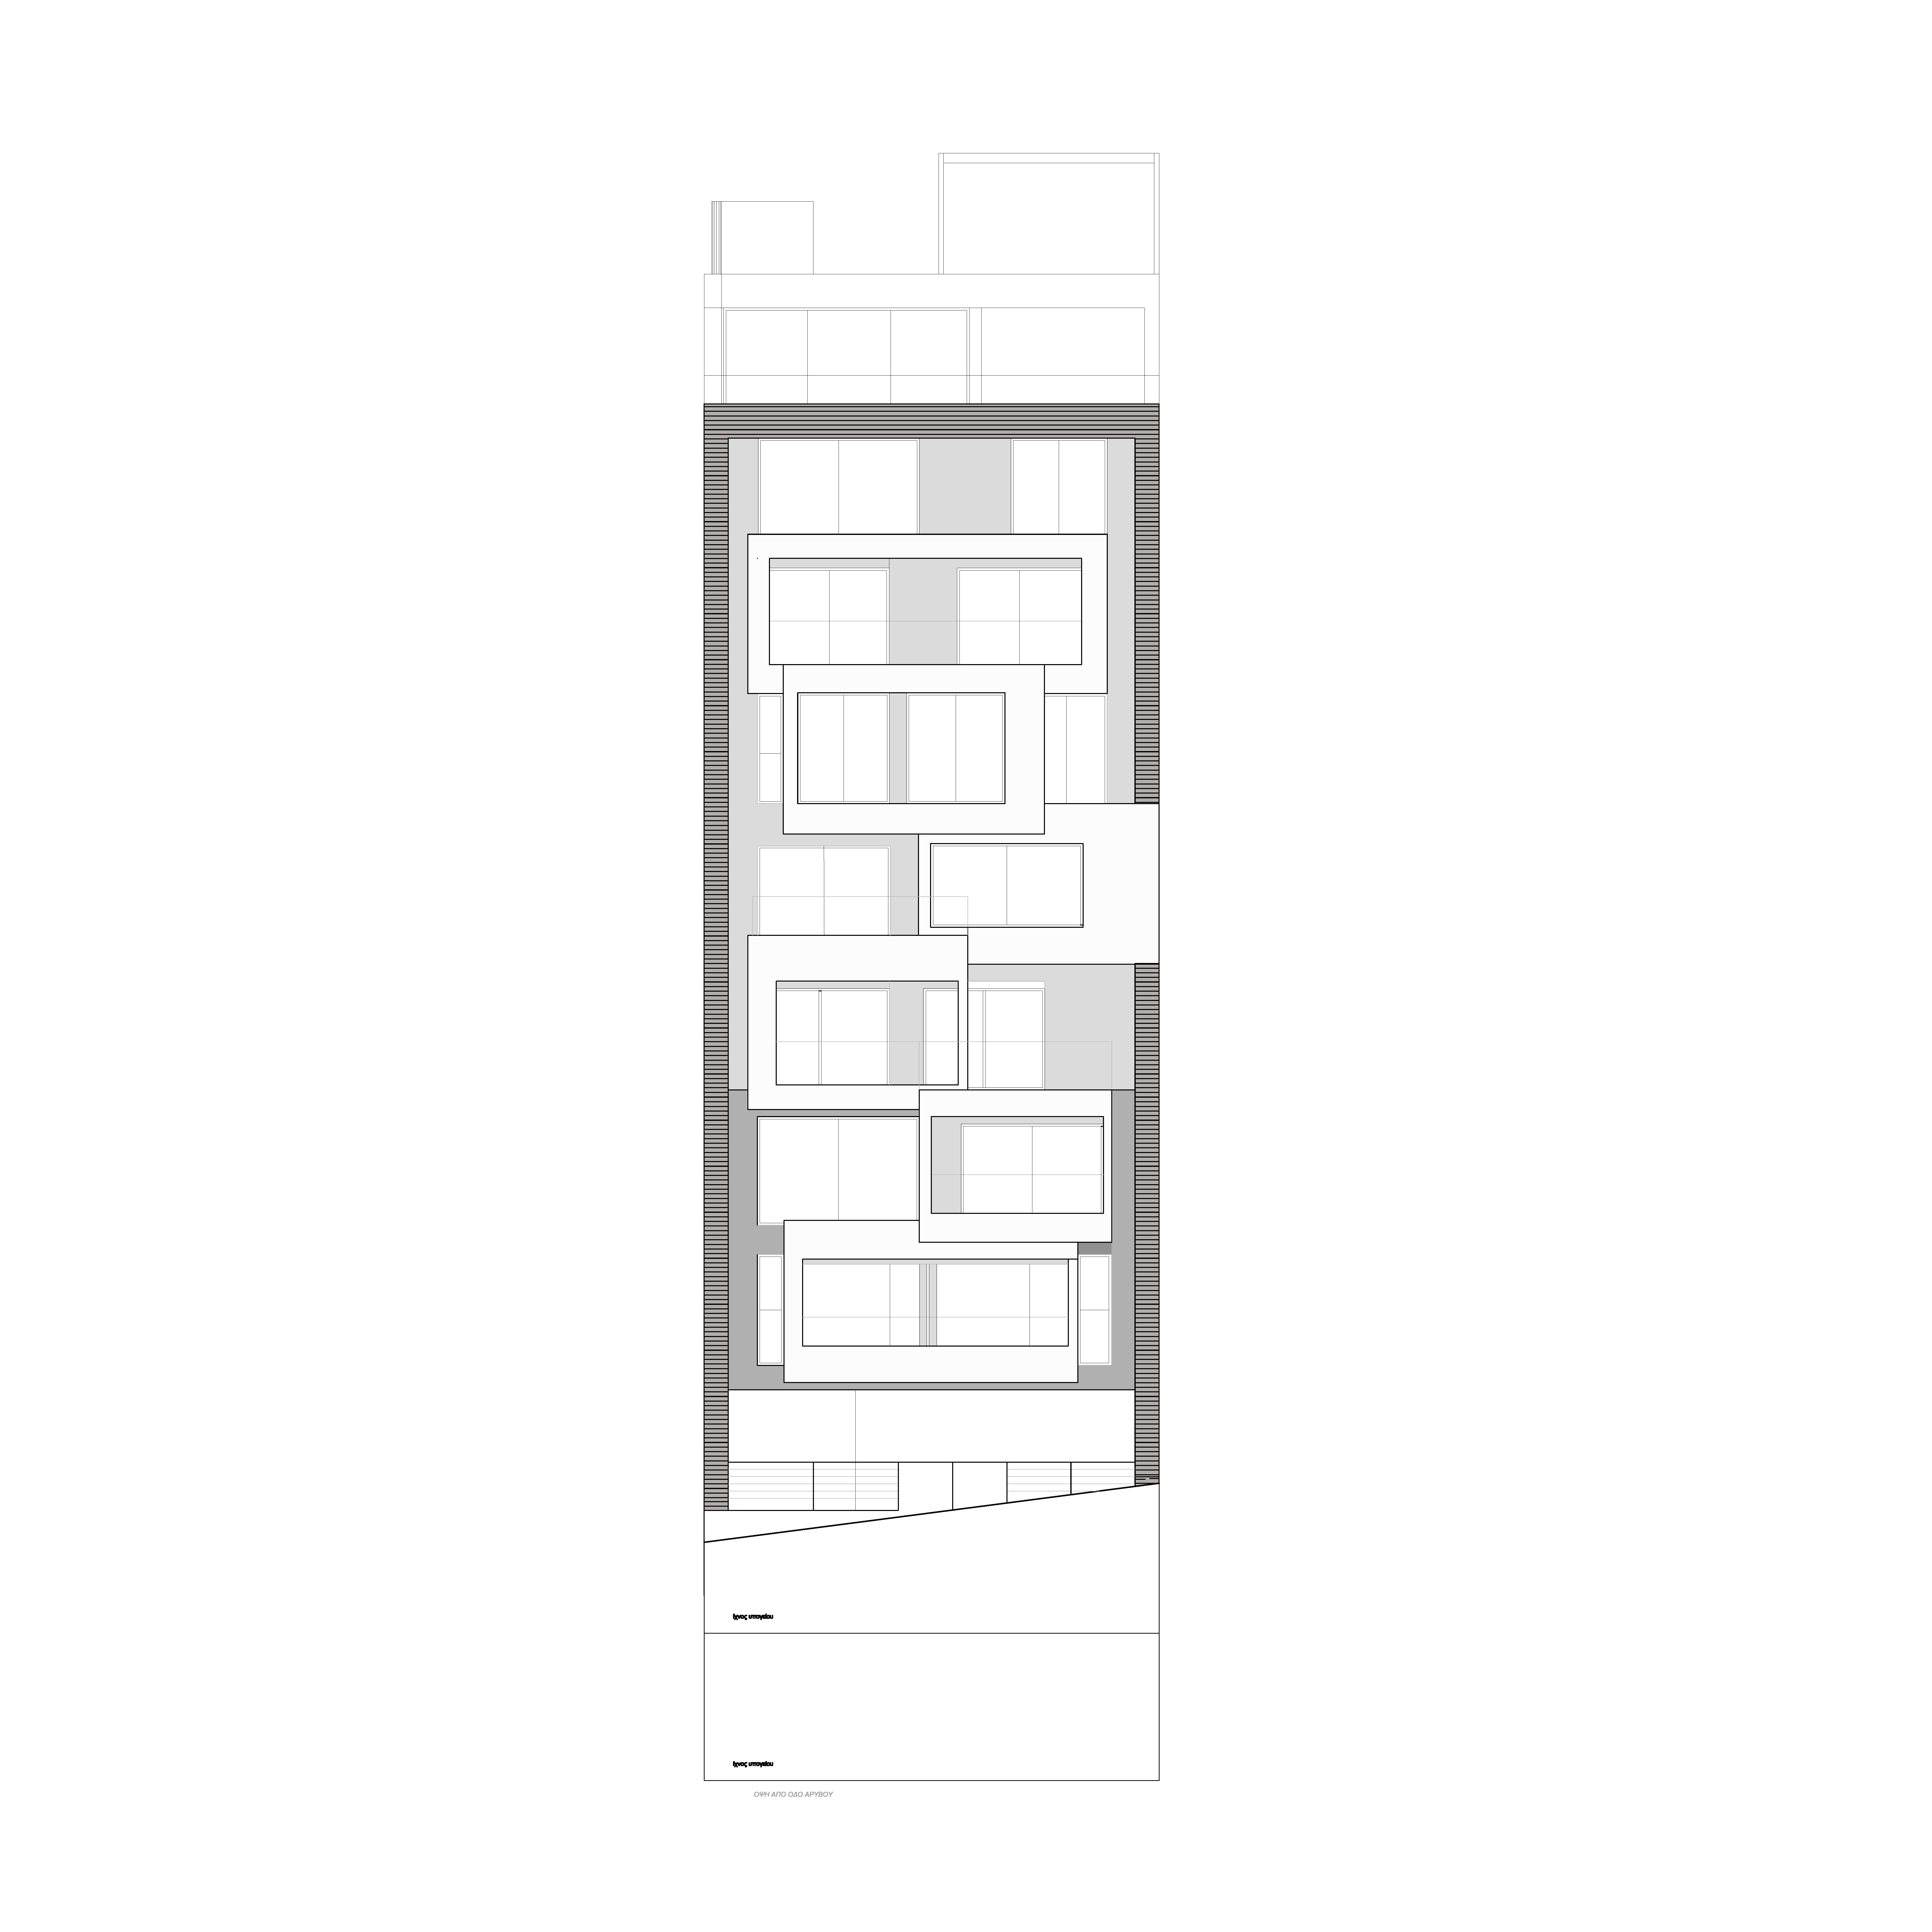 Galeria de Cubos Urbanos / KLab architects - 1